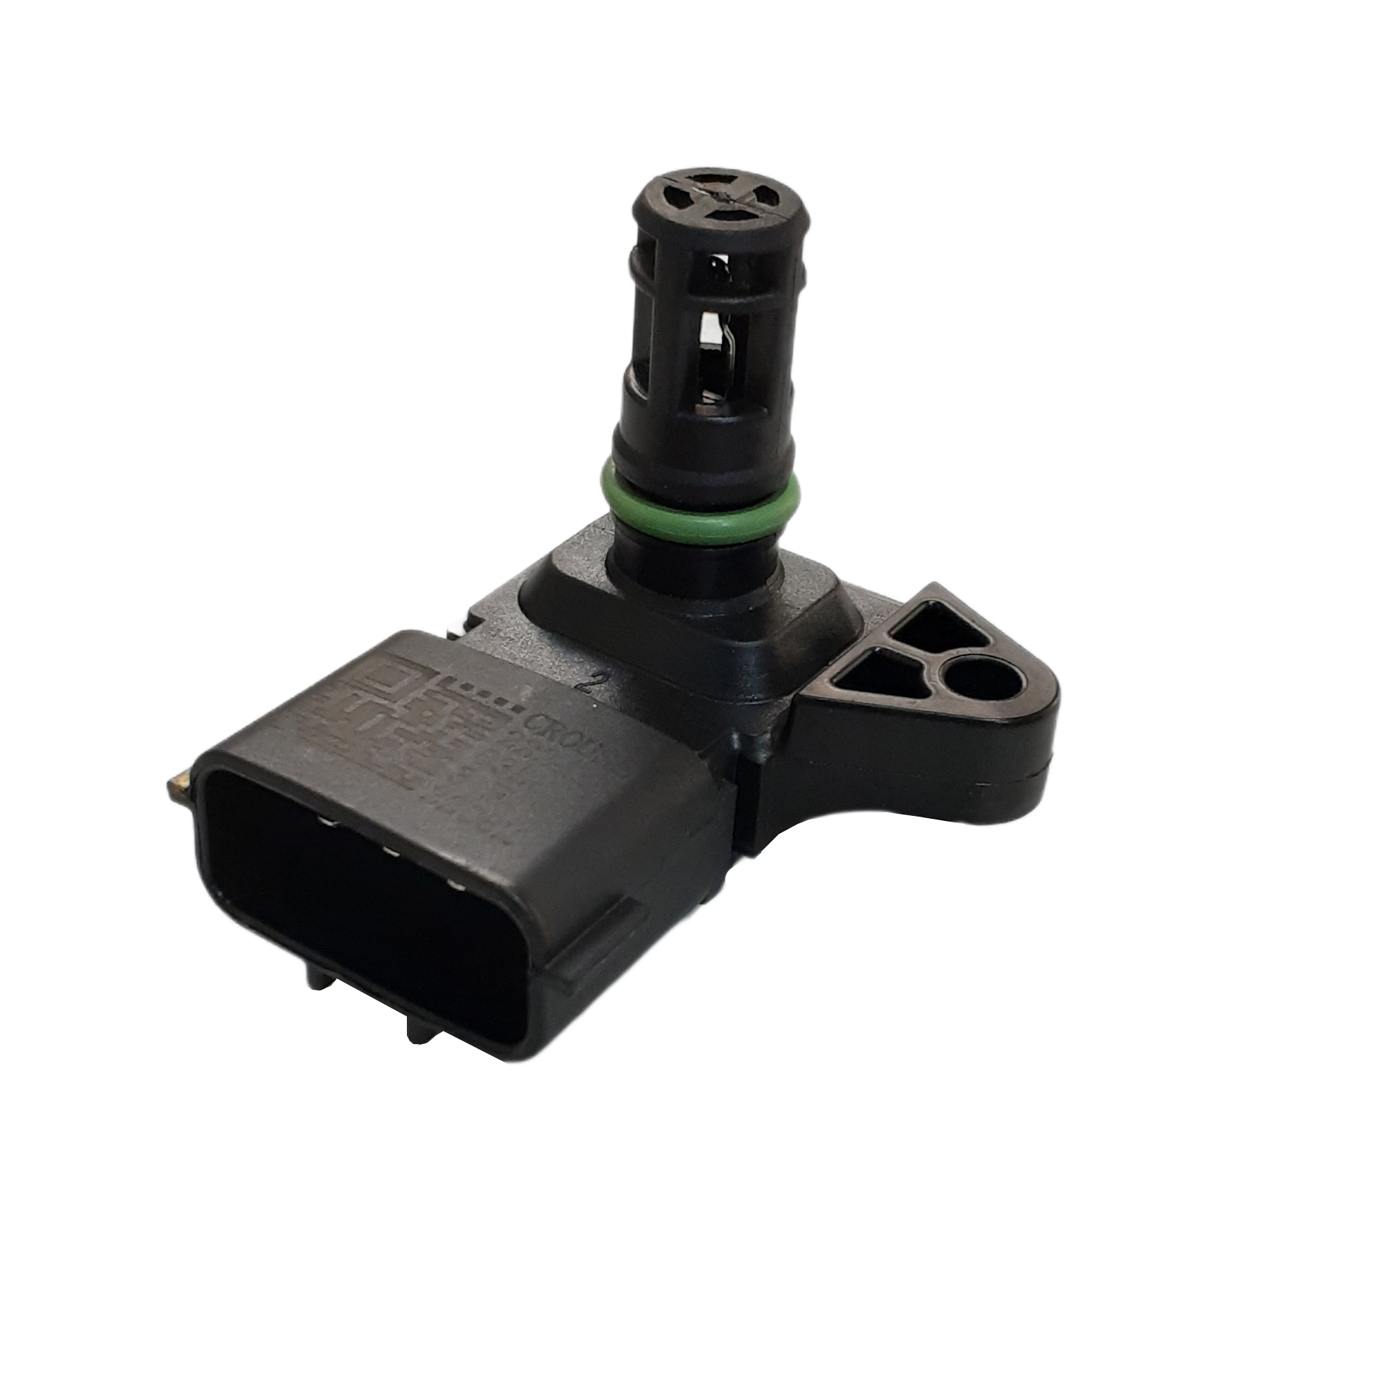 سنسور مپ خودرو کروز پلاس کد CR390805 مناسب برای پژو 206